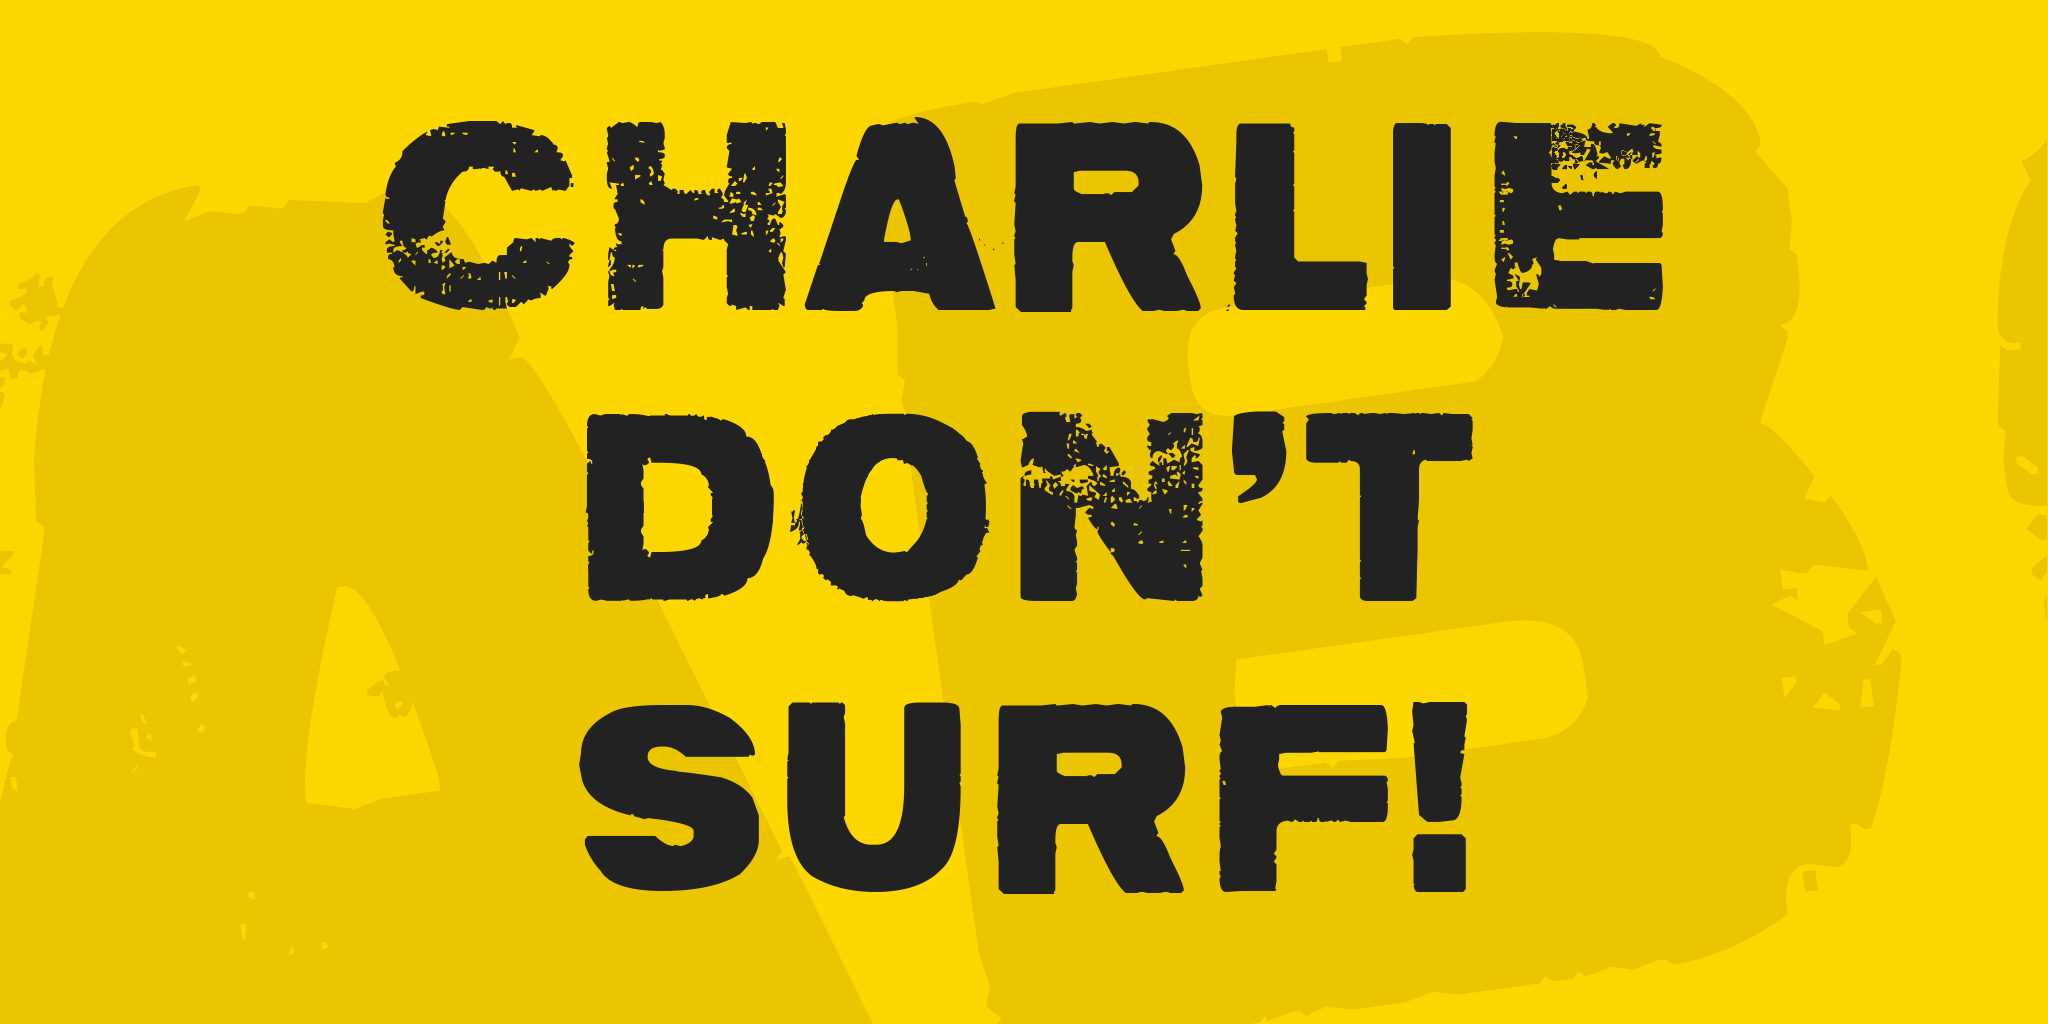 Charlie Don't Surf!